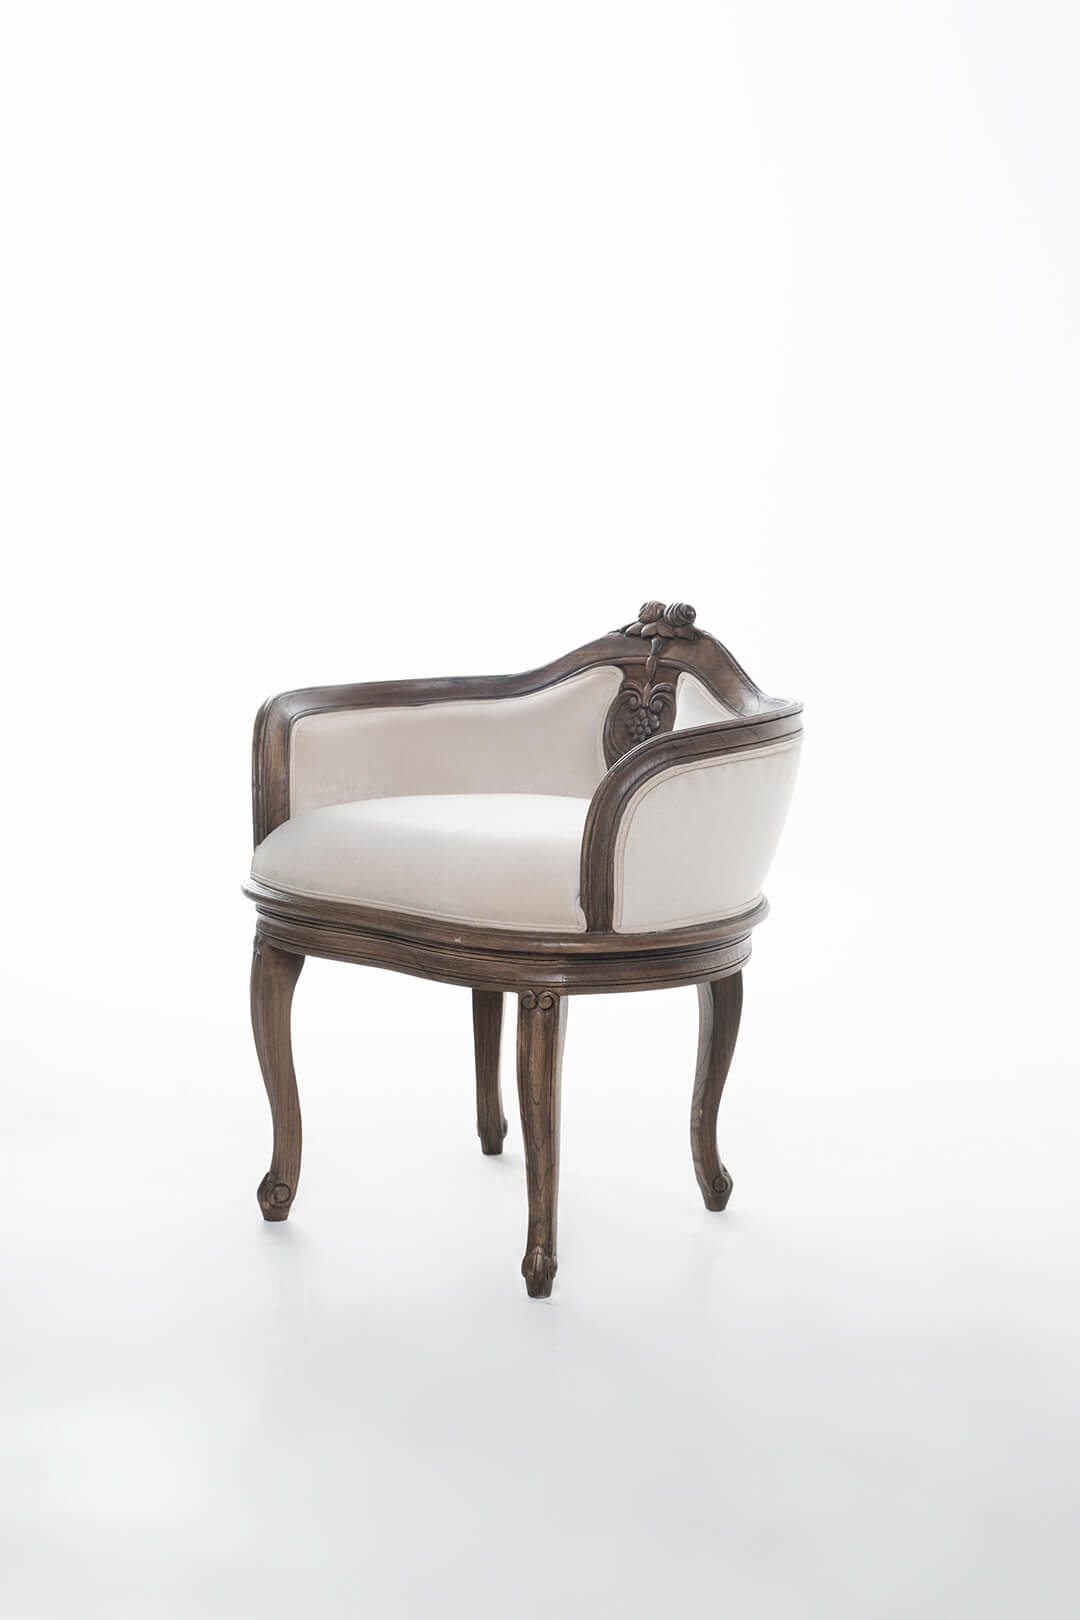 Henriette Chair